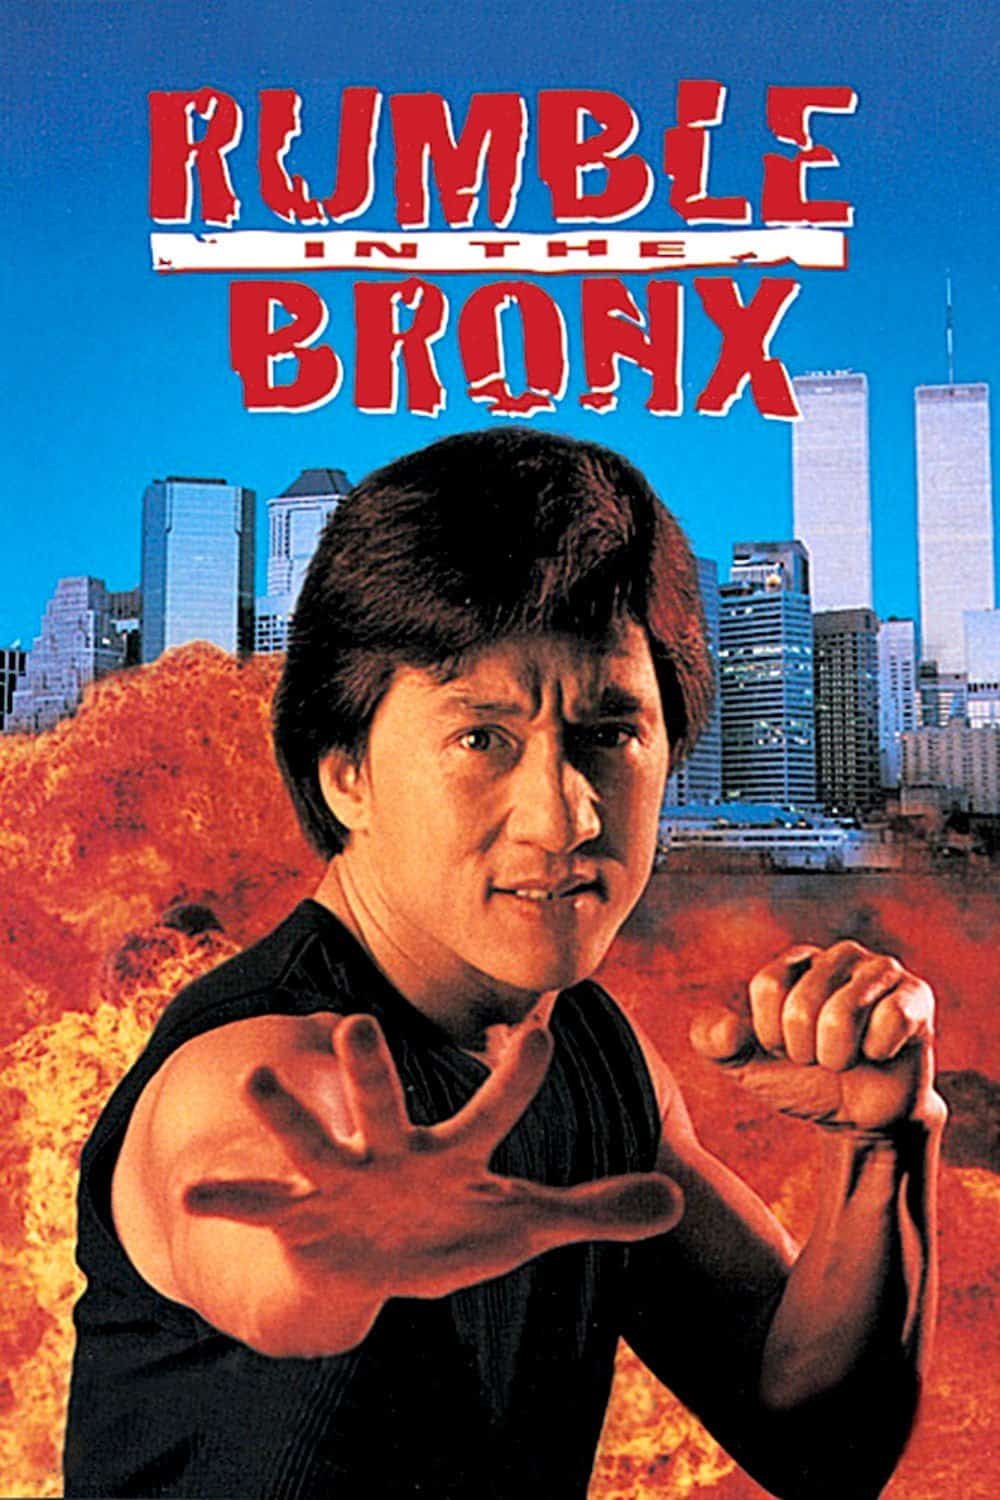 Best Jackie Chan Movies